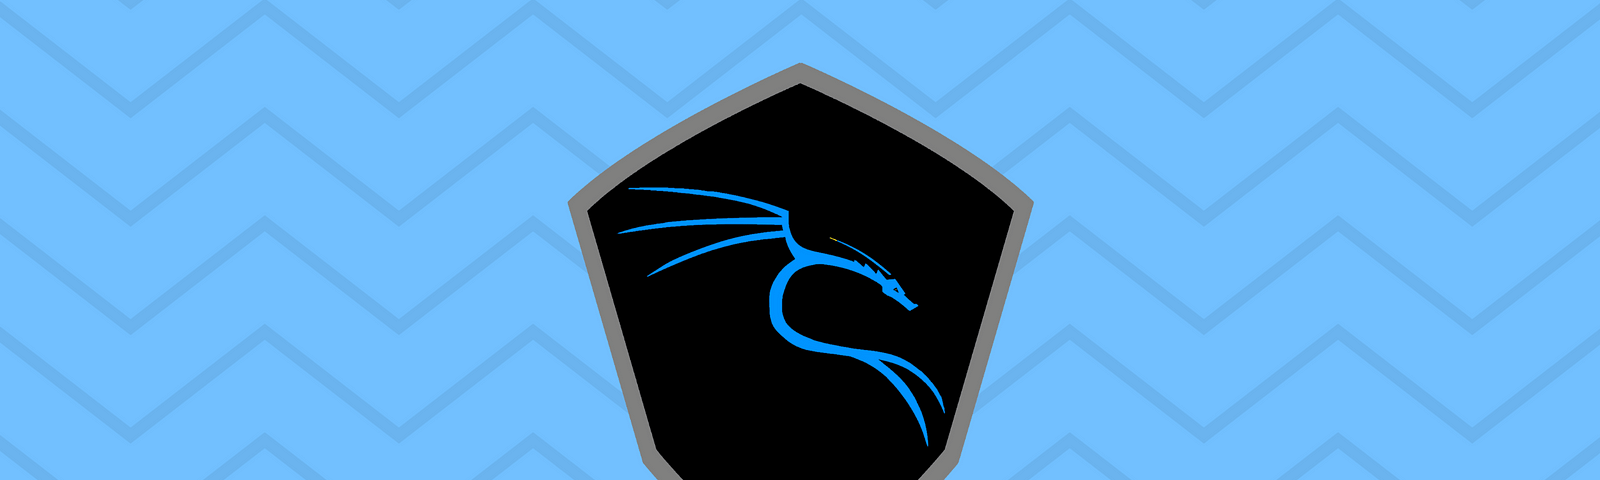 kali linux logo on a blue pattern background